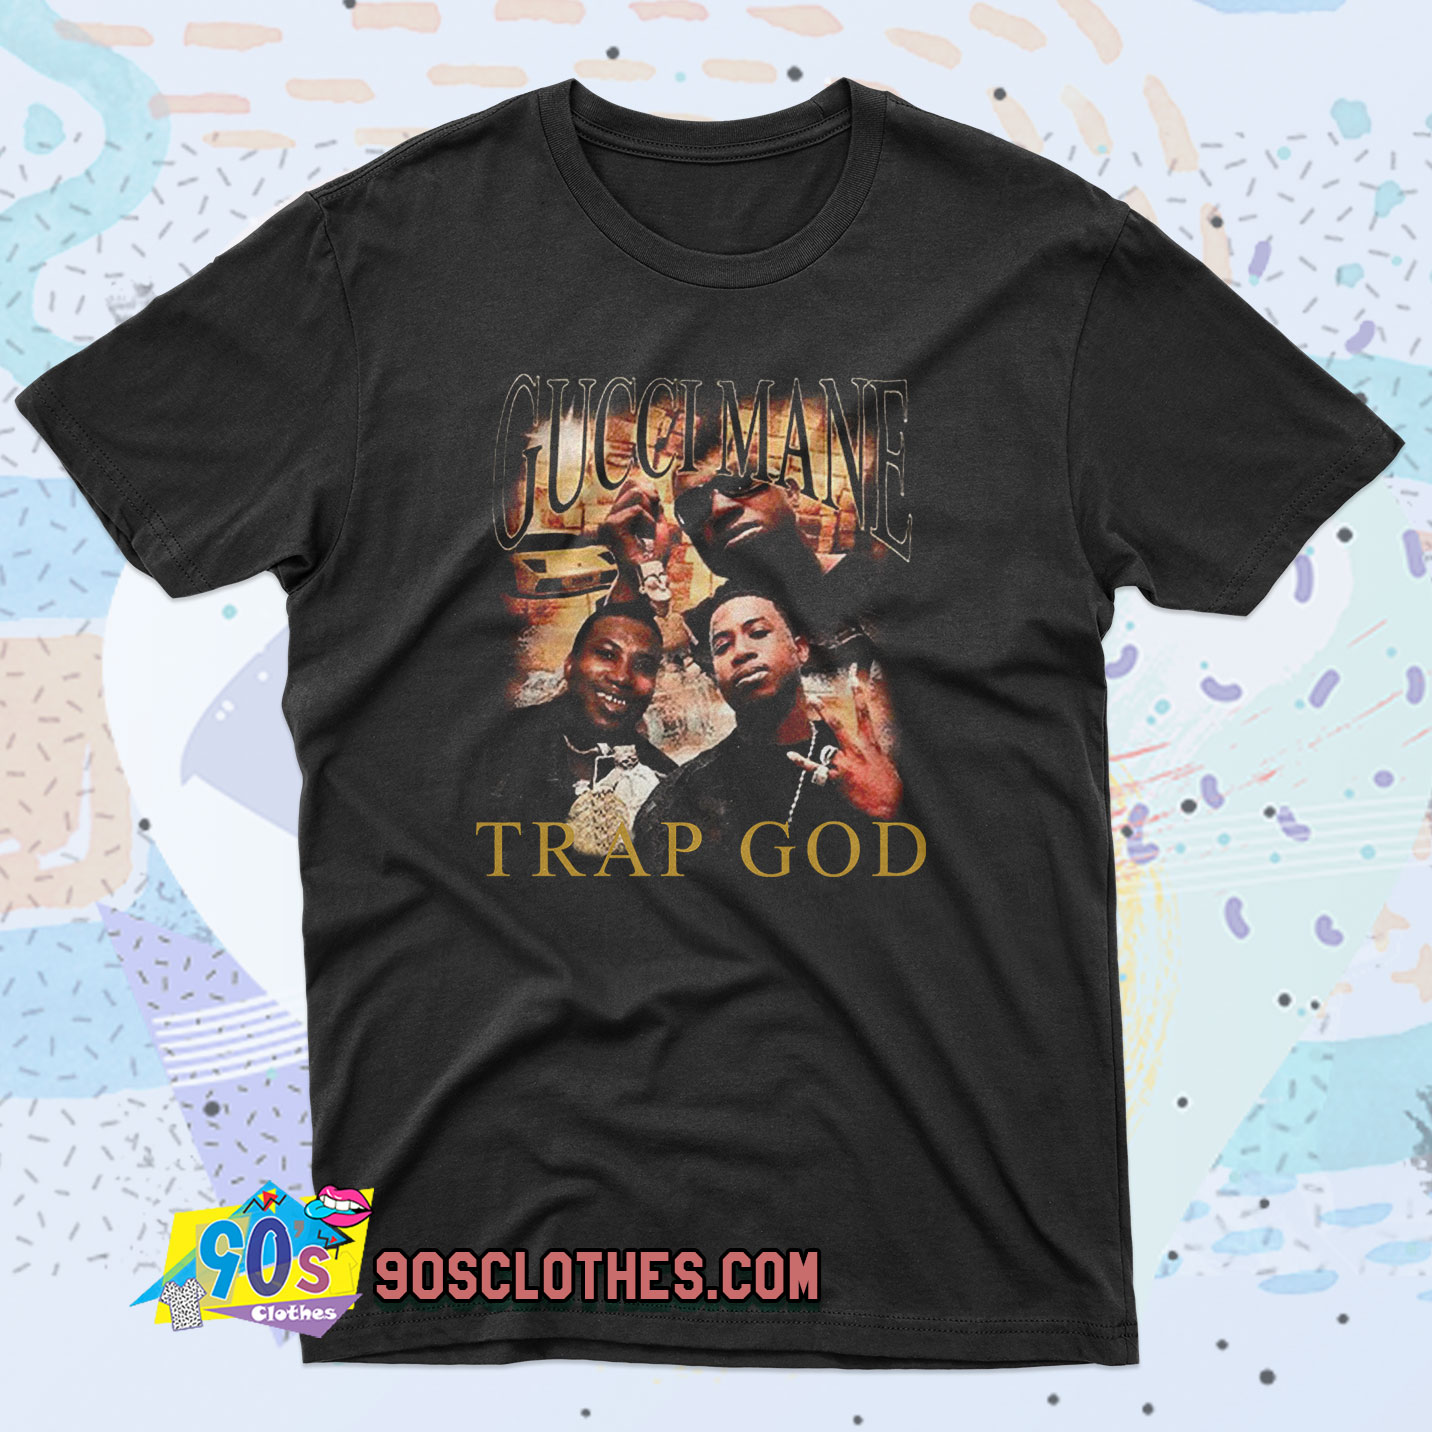 Gucci Mane Trap Vintage T Shirt Style - 90sclothes.com